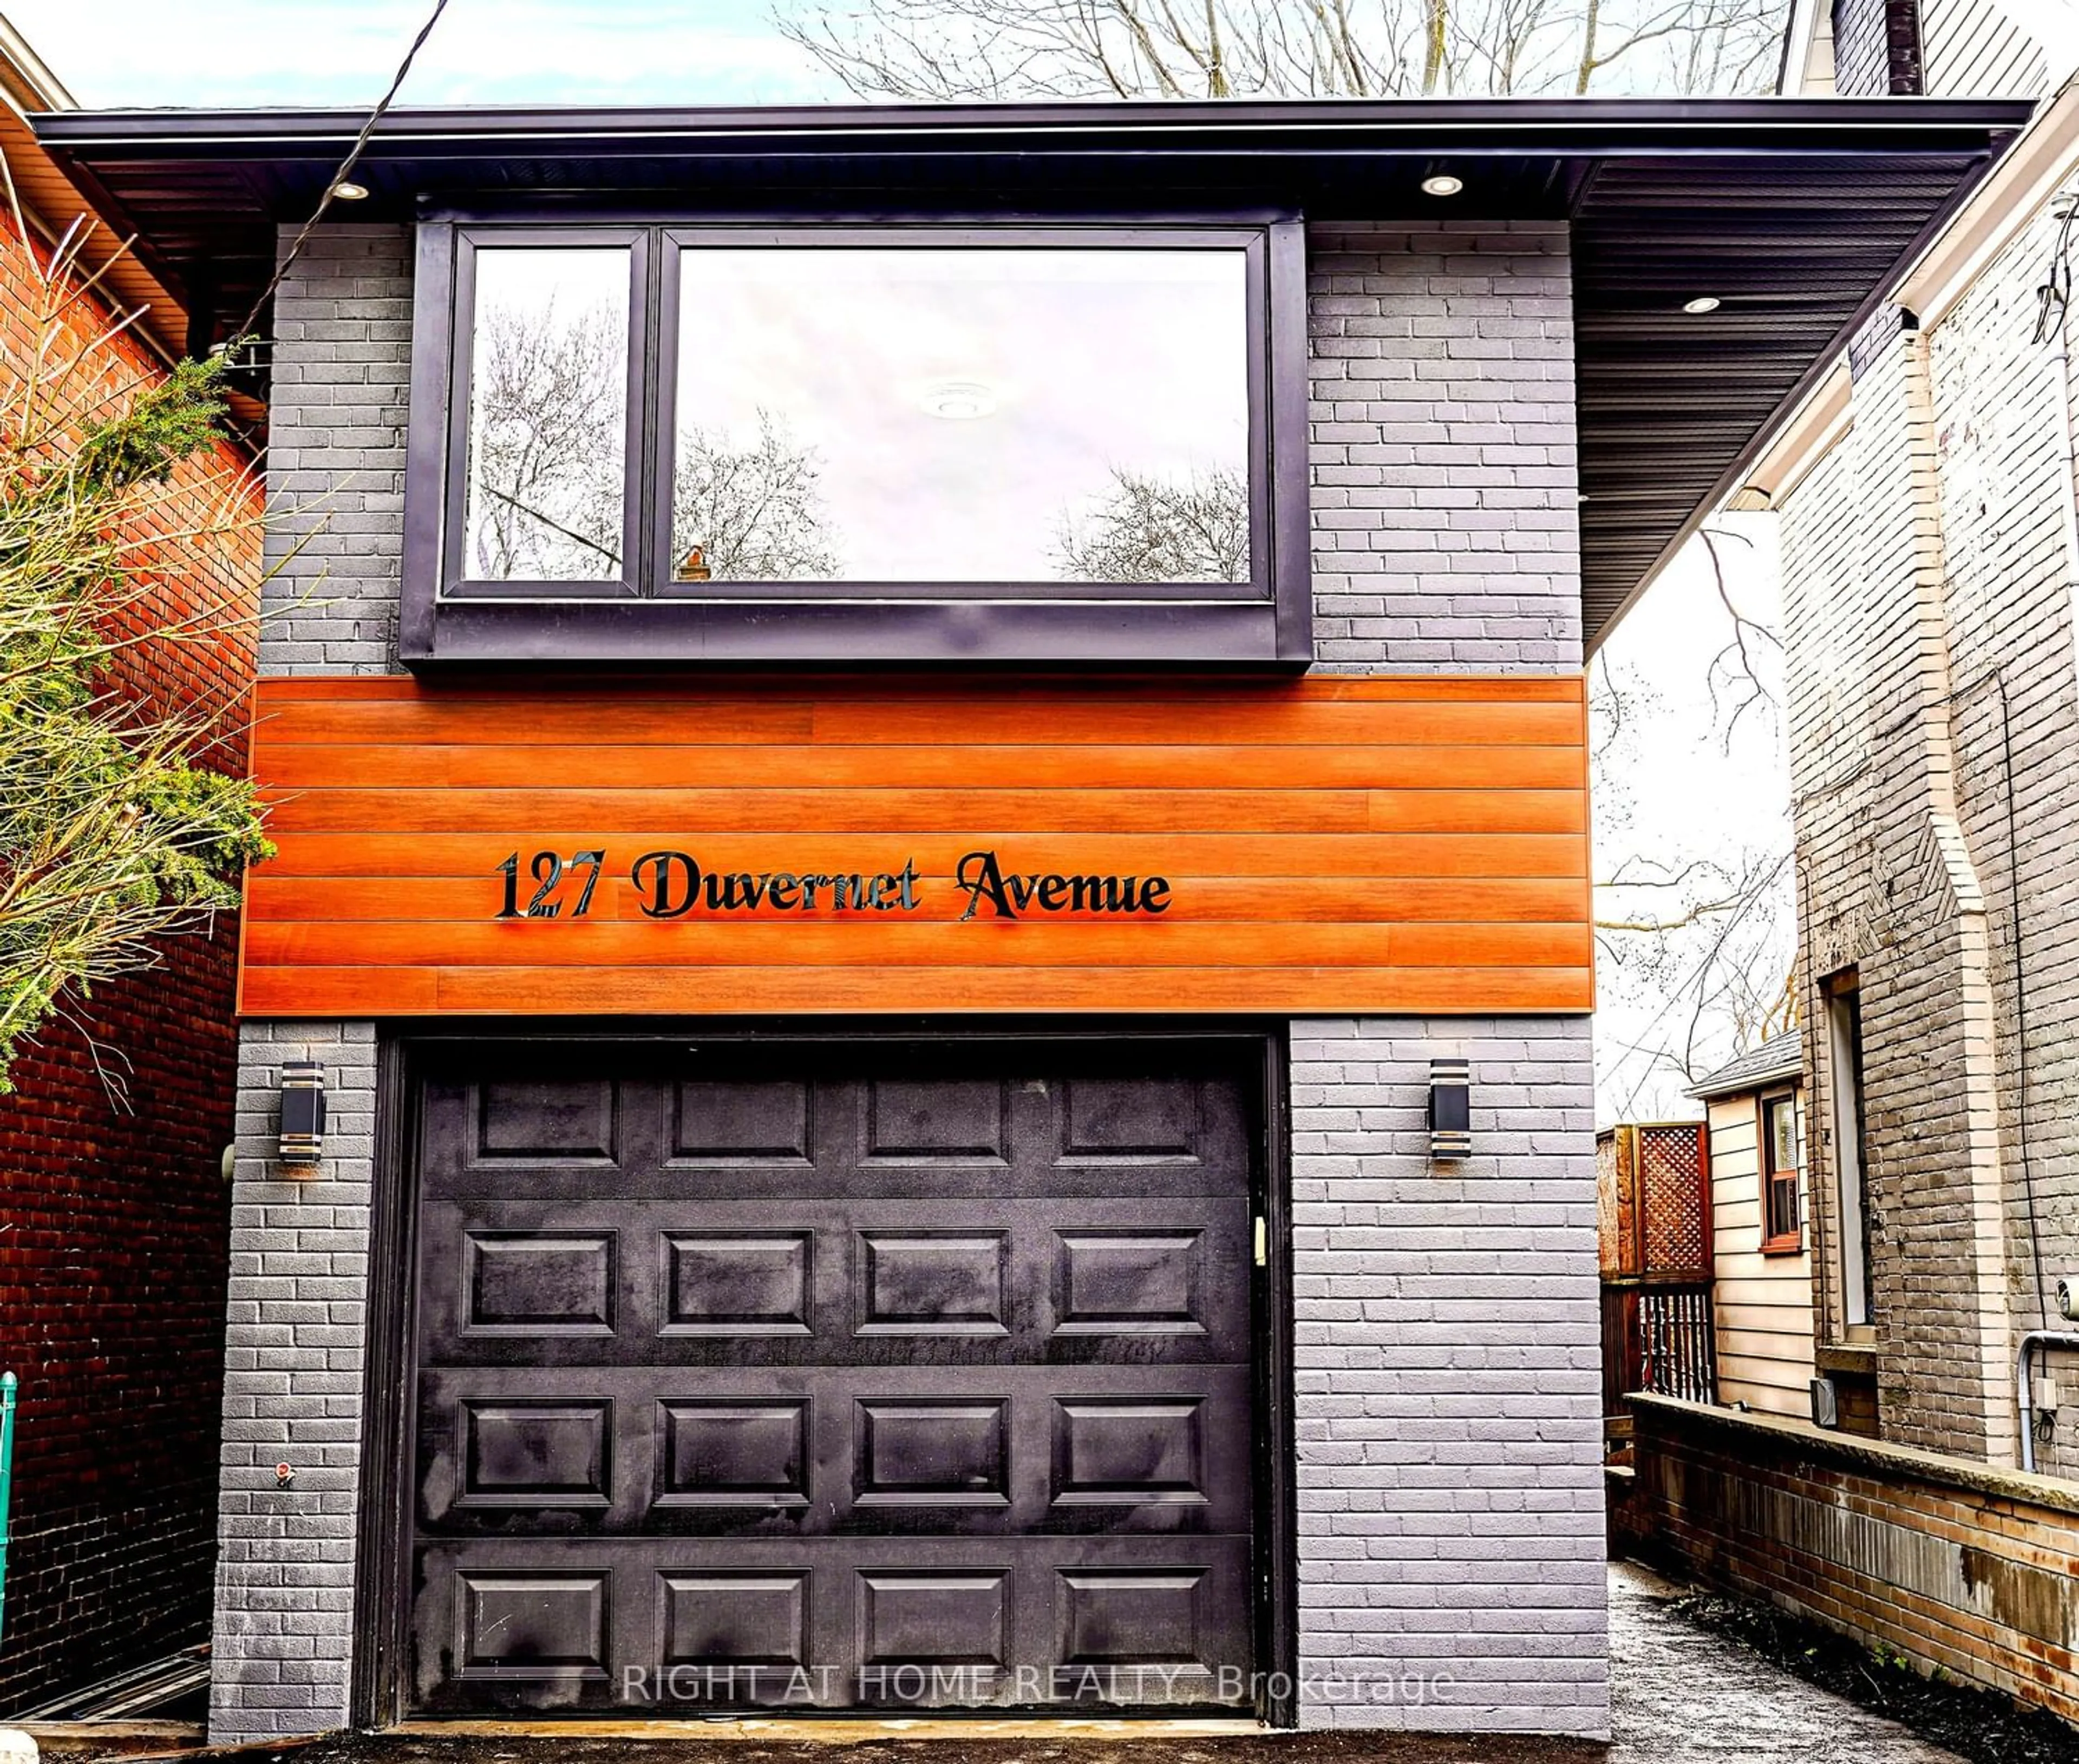 Home with brick exterior material for 127 Duvernet Ave, Toronto Ontario M4E 1V5